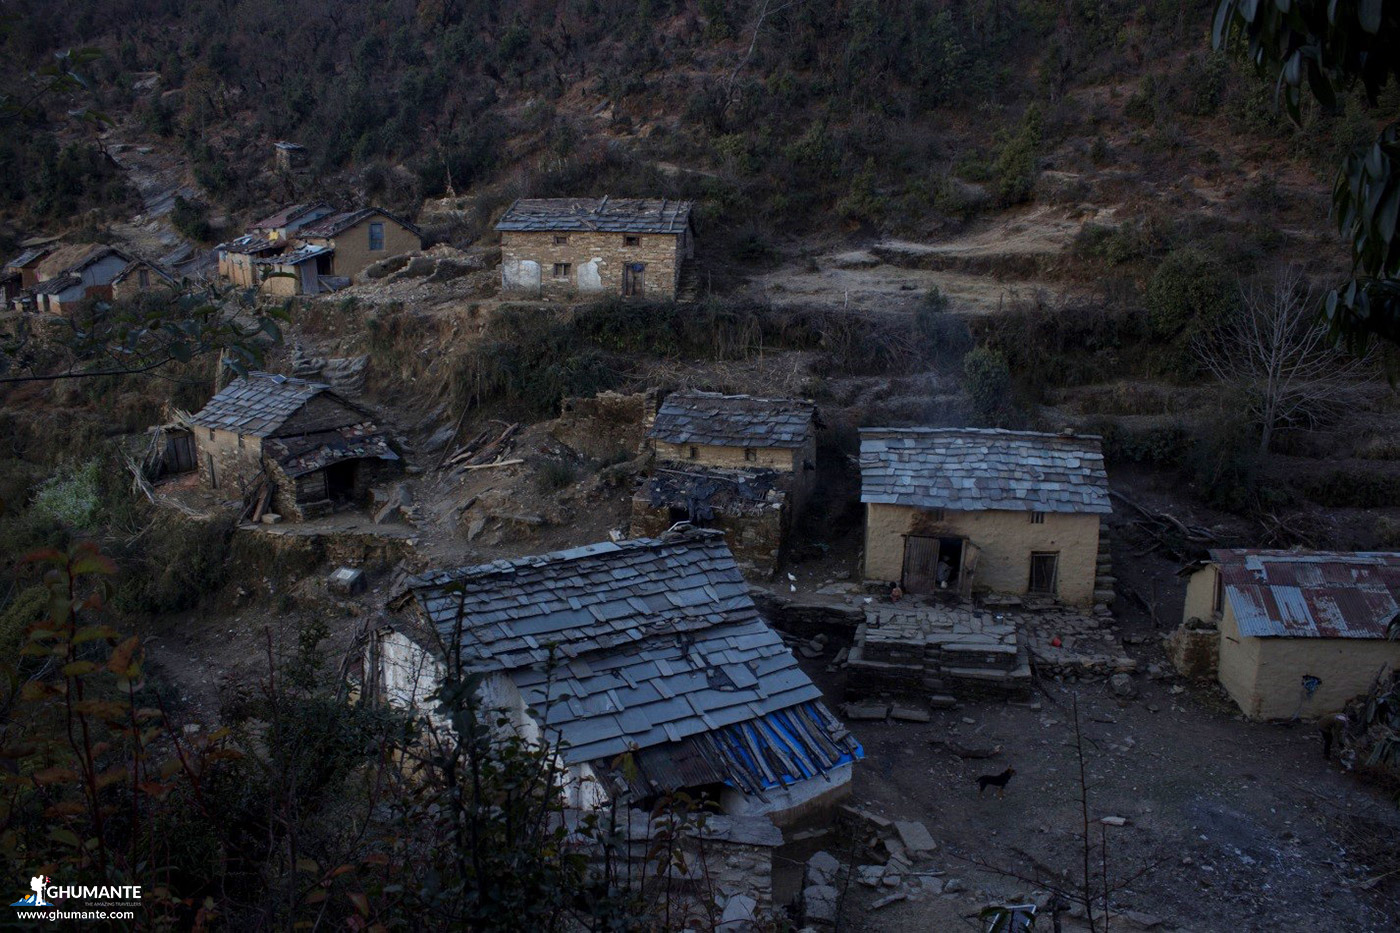 The sulky village of Jhigrana